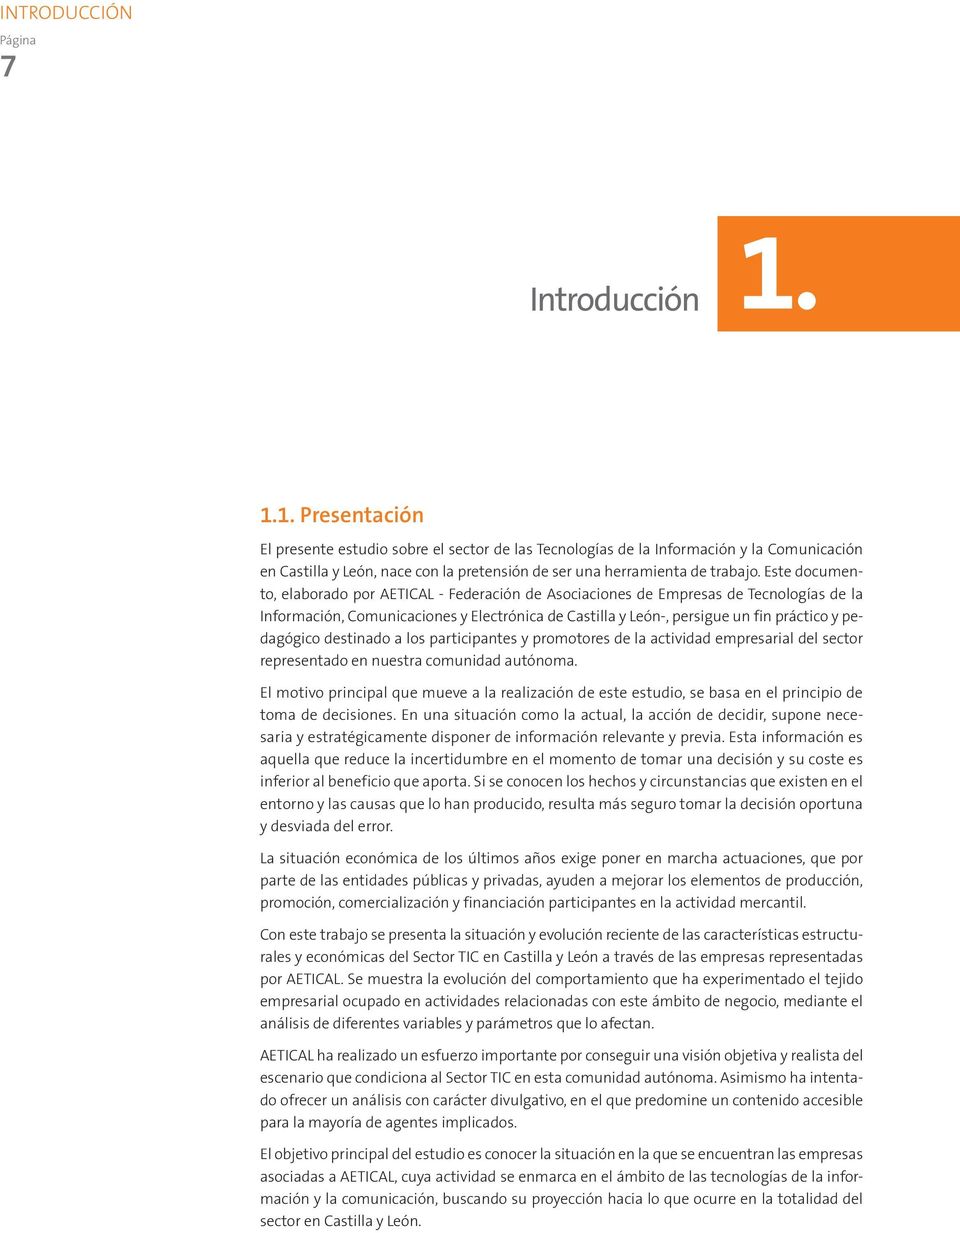 Este documento, elaborado por AETICAL - Federación de Asociaciones de Empresas de Tecnologías de la Información, Comunicaciones y Electrónica de Castilla y León-, persigue un fin práctico y